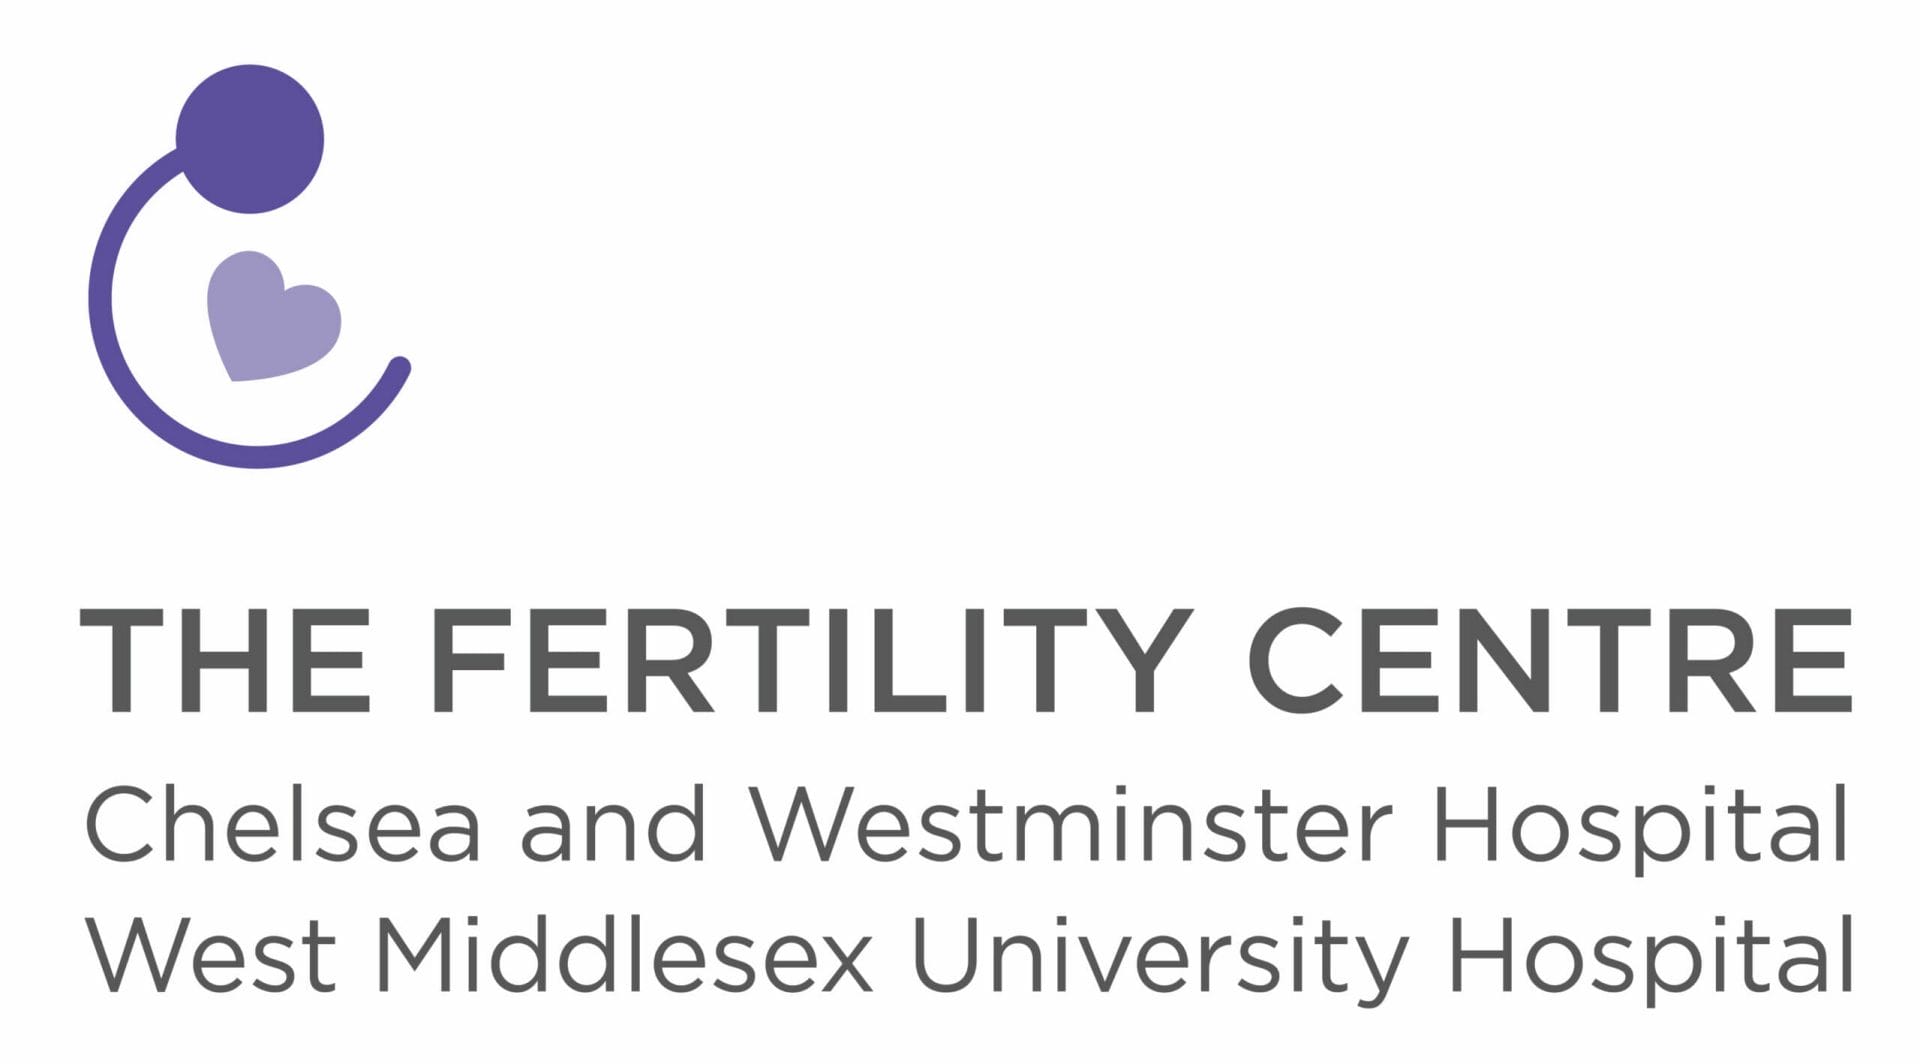 The Fertility Centre